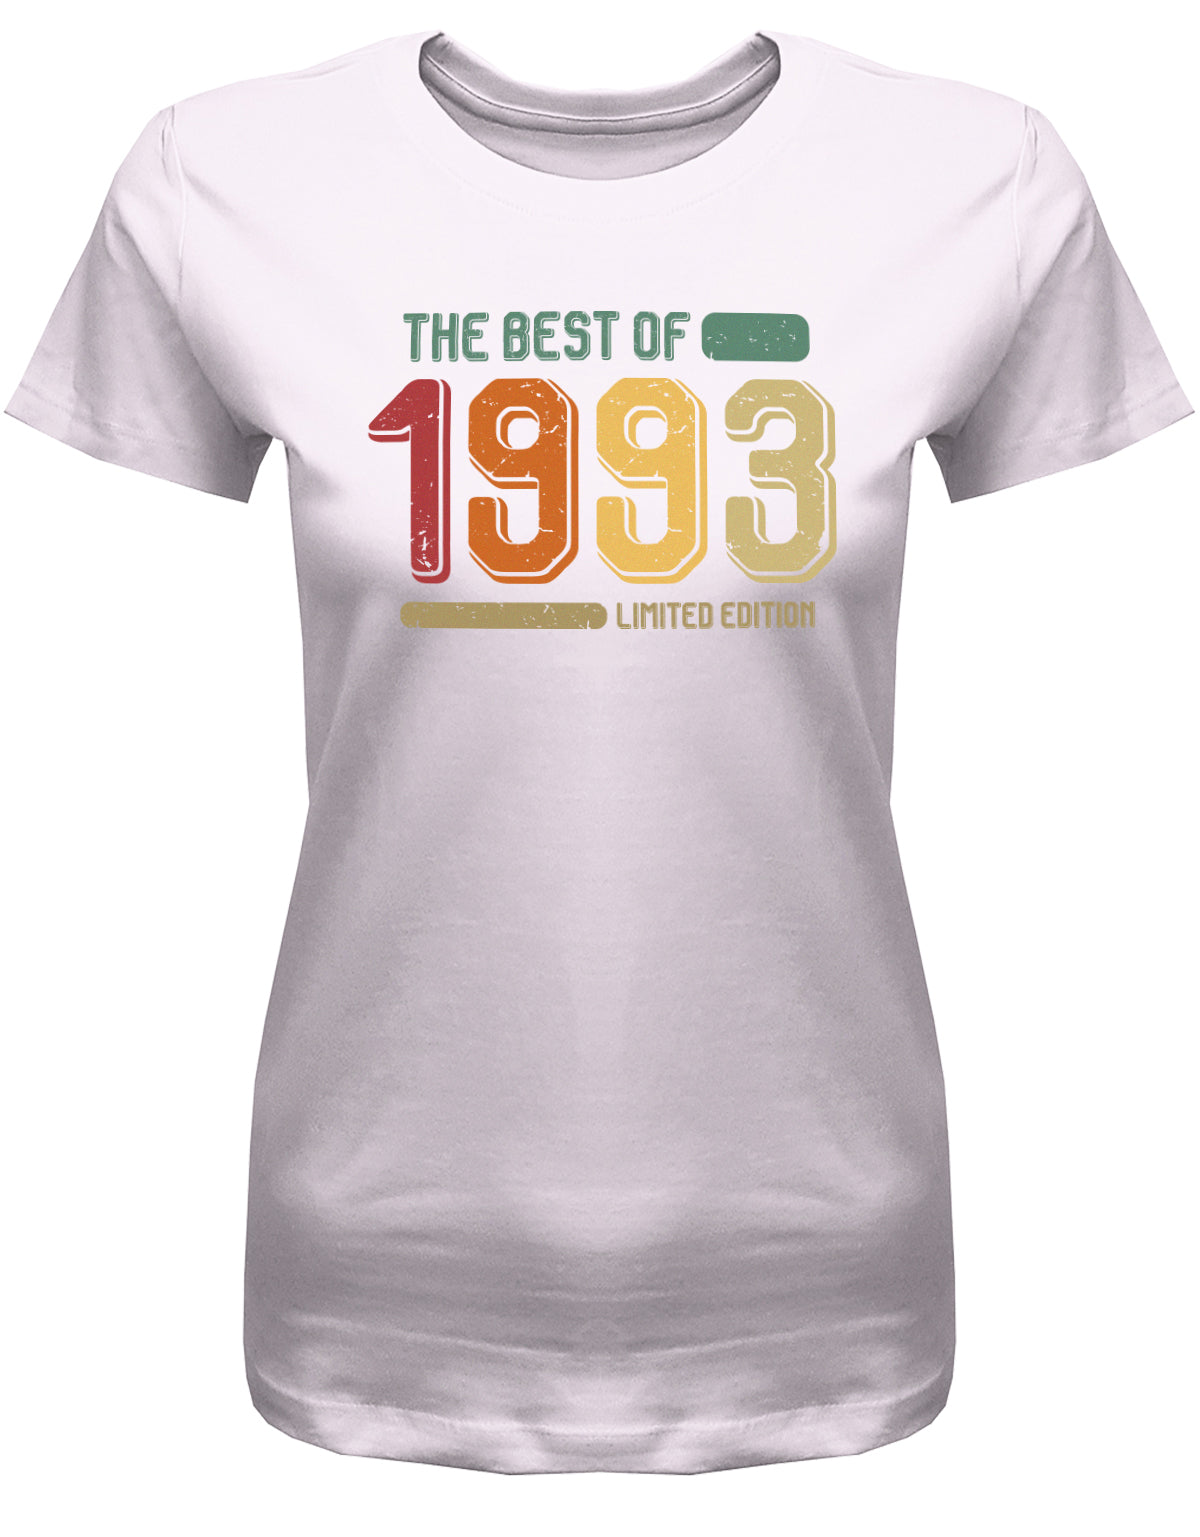 Lustiges T-Shirt zum 30. Geburtstag für die Frau Bedruckt mit: The Best of 1993 Limited Edition Retro Vintage ✓ Geschenk zum 30 geburtstag Frau ✓ 1993 geburtstag Frau ✓ 30 Geburtstag tshirt ✓ shirt geburtstag 30 Rosa